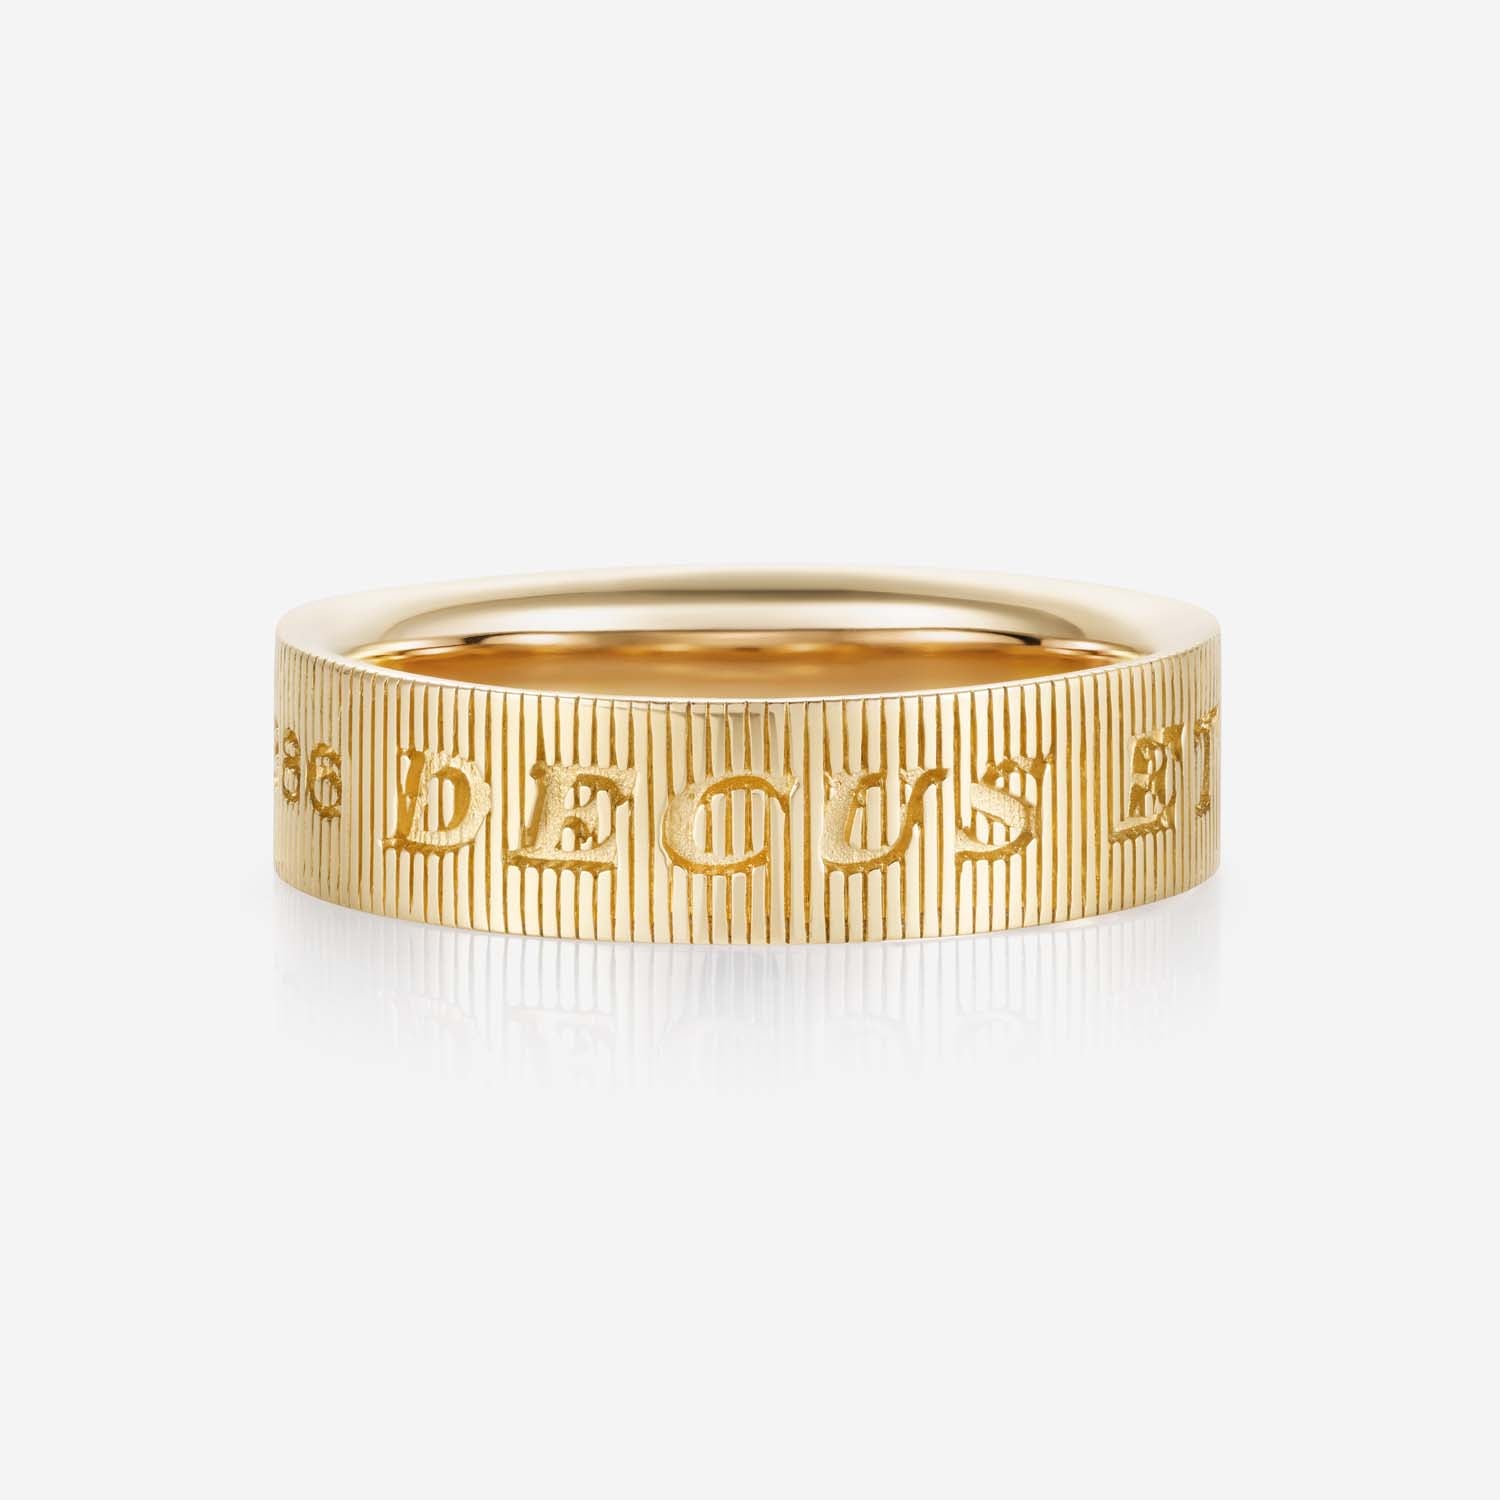 886 Royal Mint Rings Tutamen Large Ring 18ct Yellow Gold